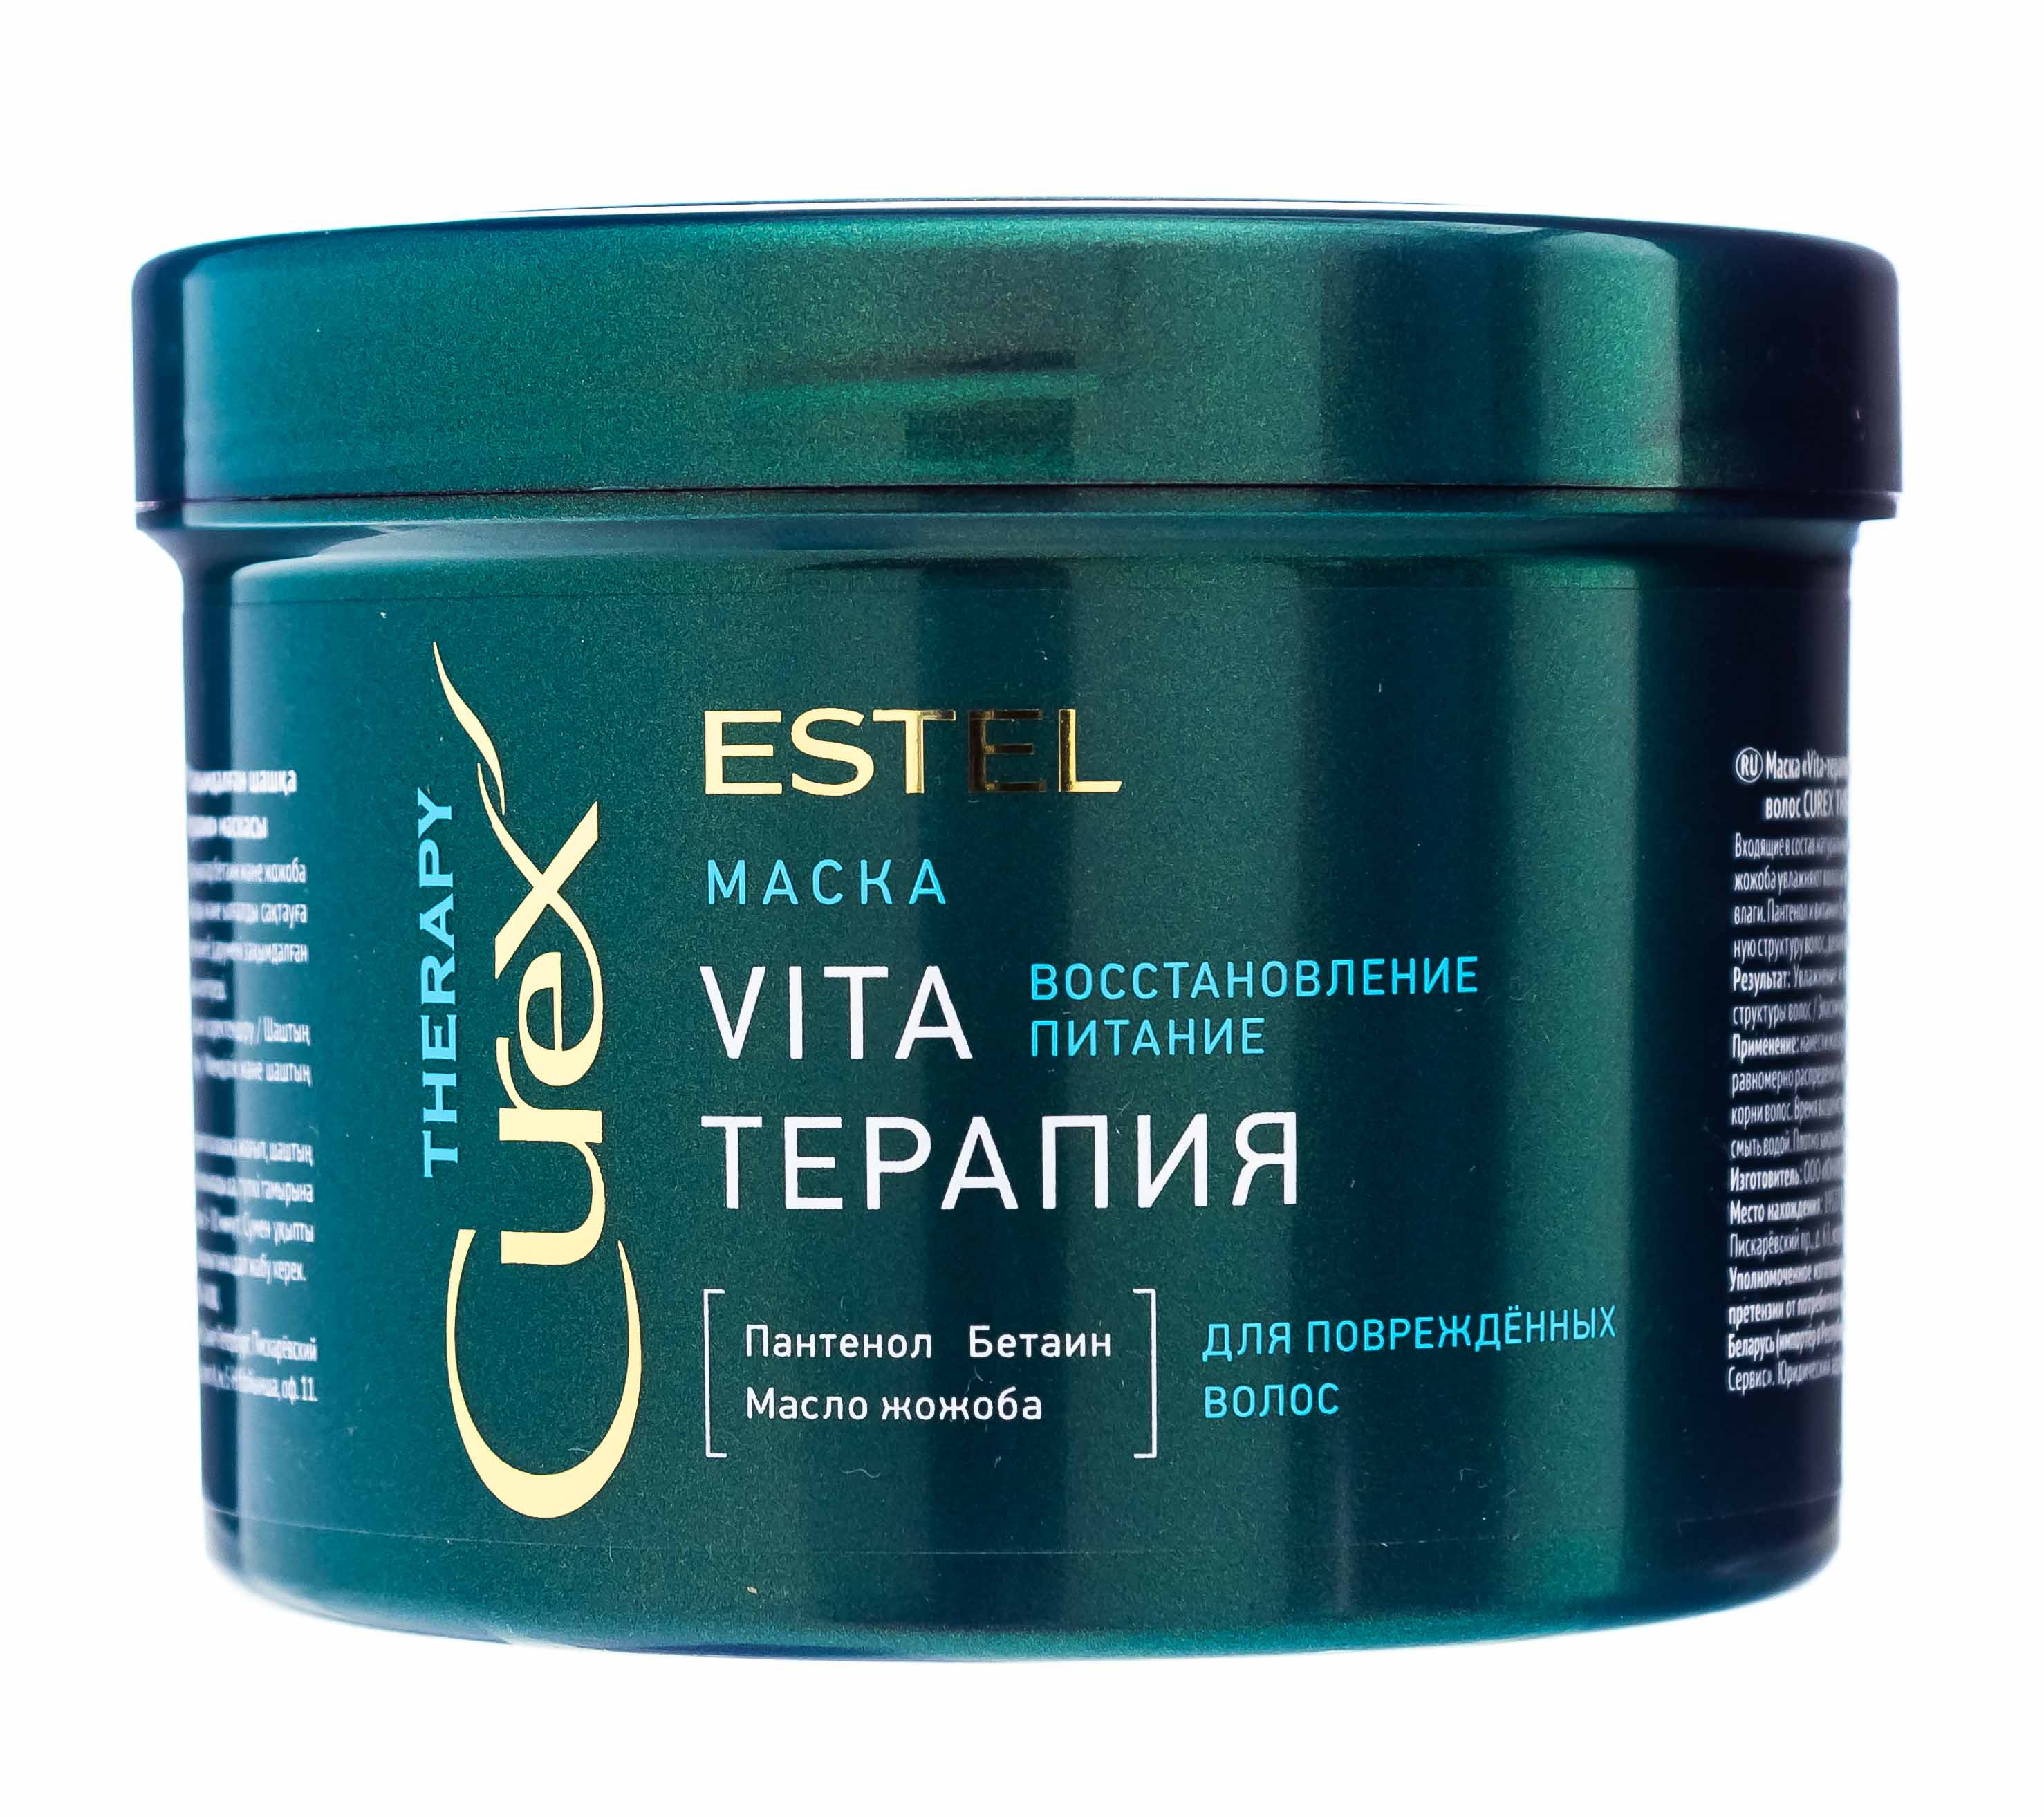 Подружка маска для волос. Маска Vita - терапия Estel Curex Therapy для повреждённых волос 500. Маска "Vita-терапия" для повреждённых волос Curex Therapy (500 мл). Estel Curex маска Vita маска терапия.